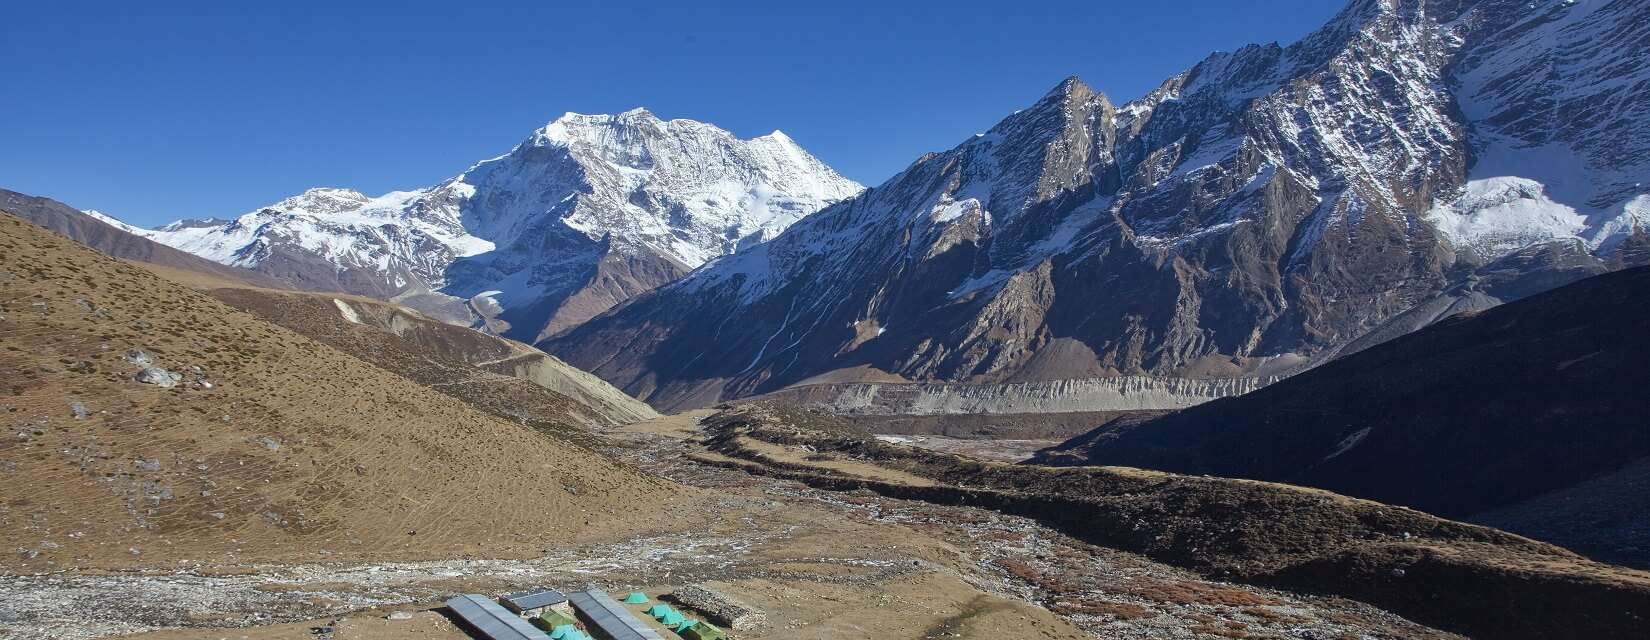 Manaslu Nepal